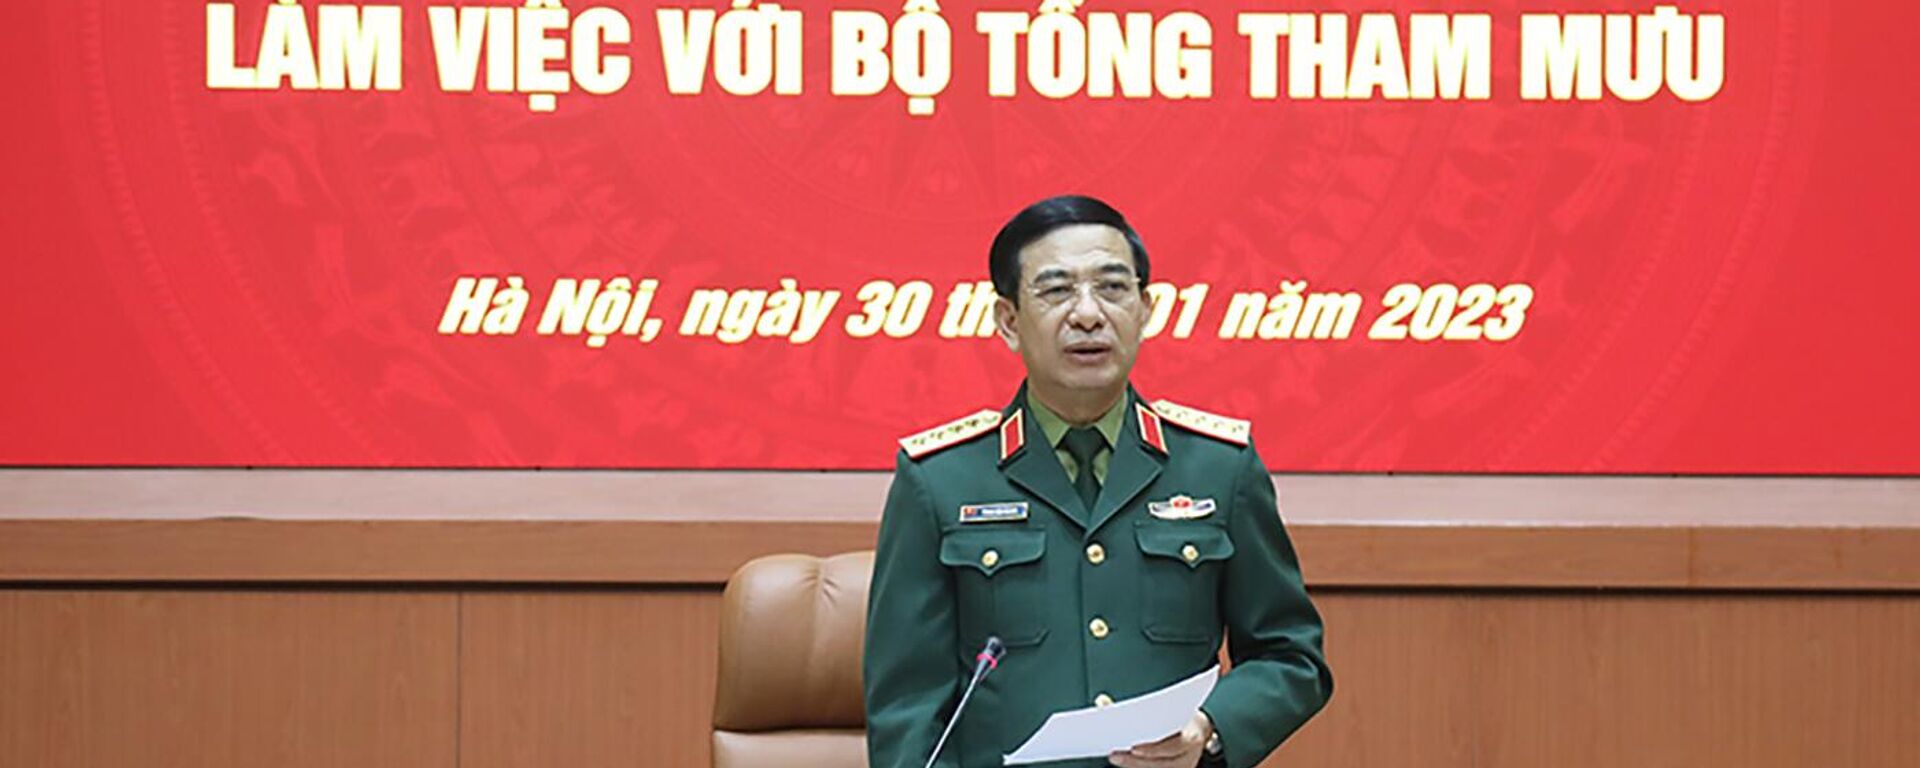 Đại tướng Phan Văn Giang phát biểu chỉ đạo tại buổi làm việc. - Sputnik Việt Nam, 1920, 31.01.2023